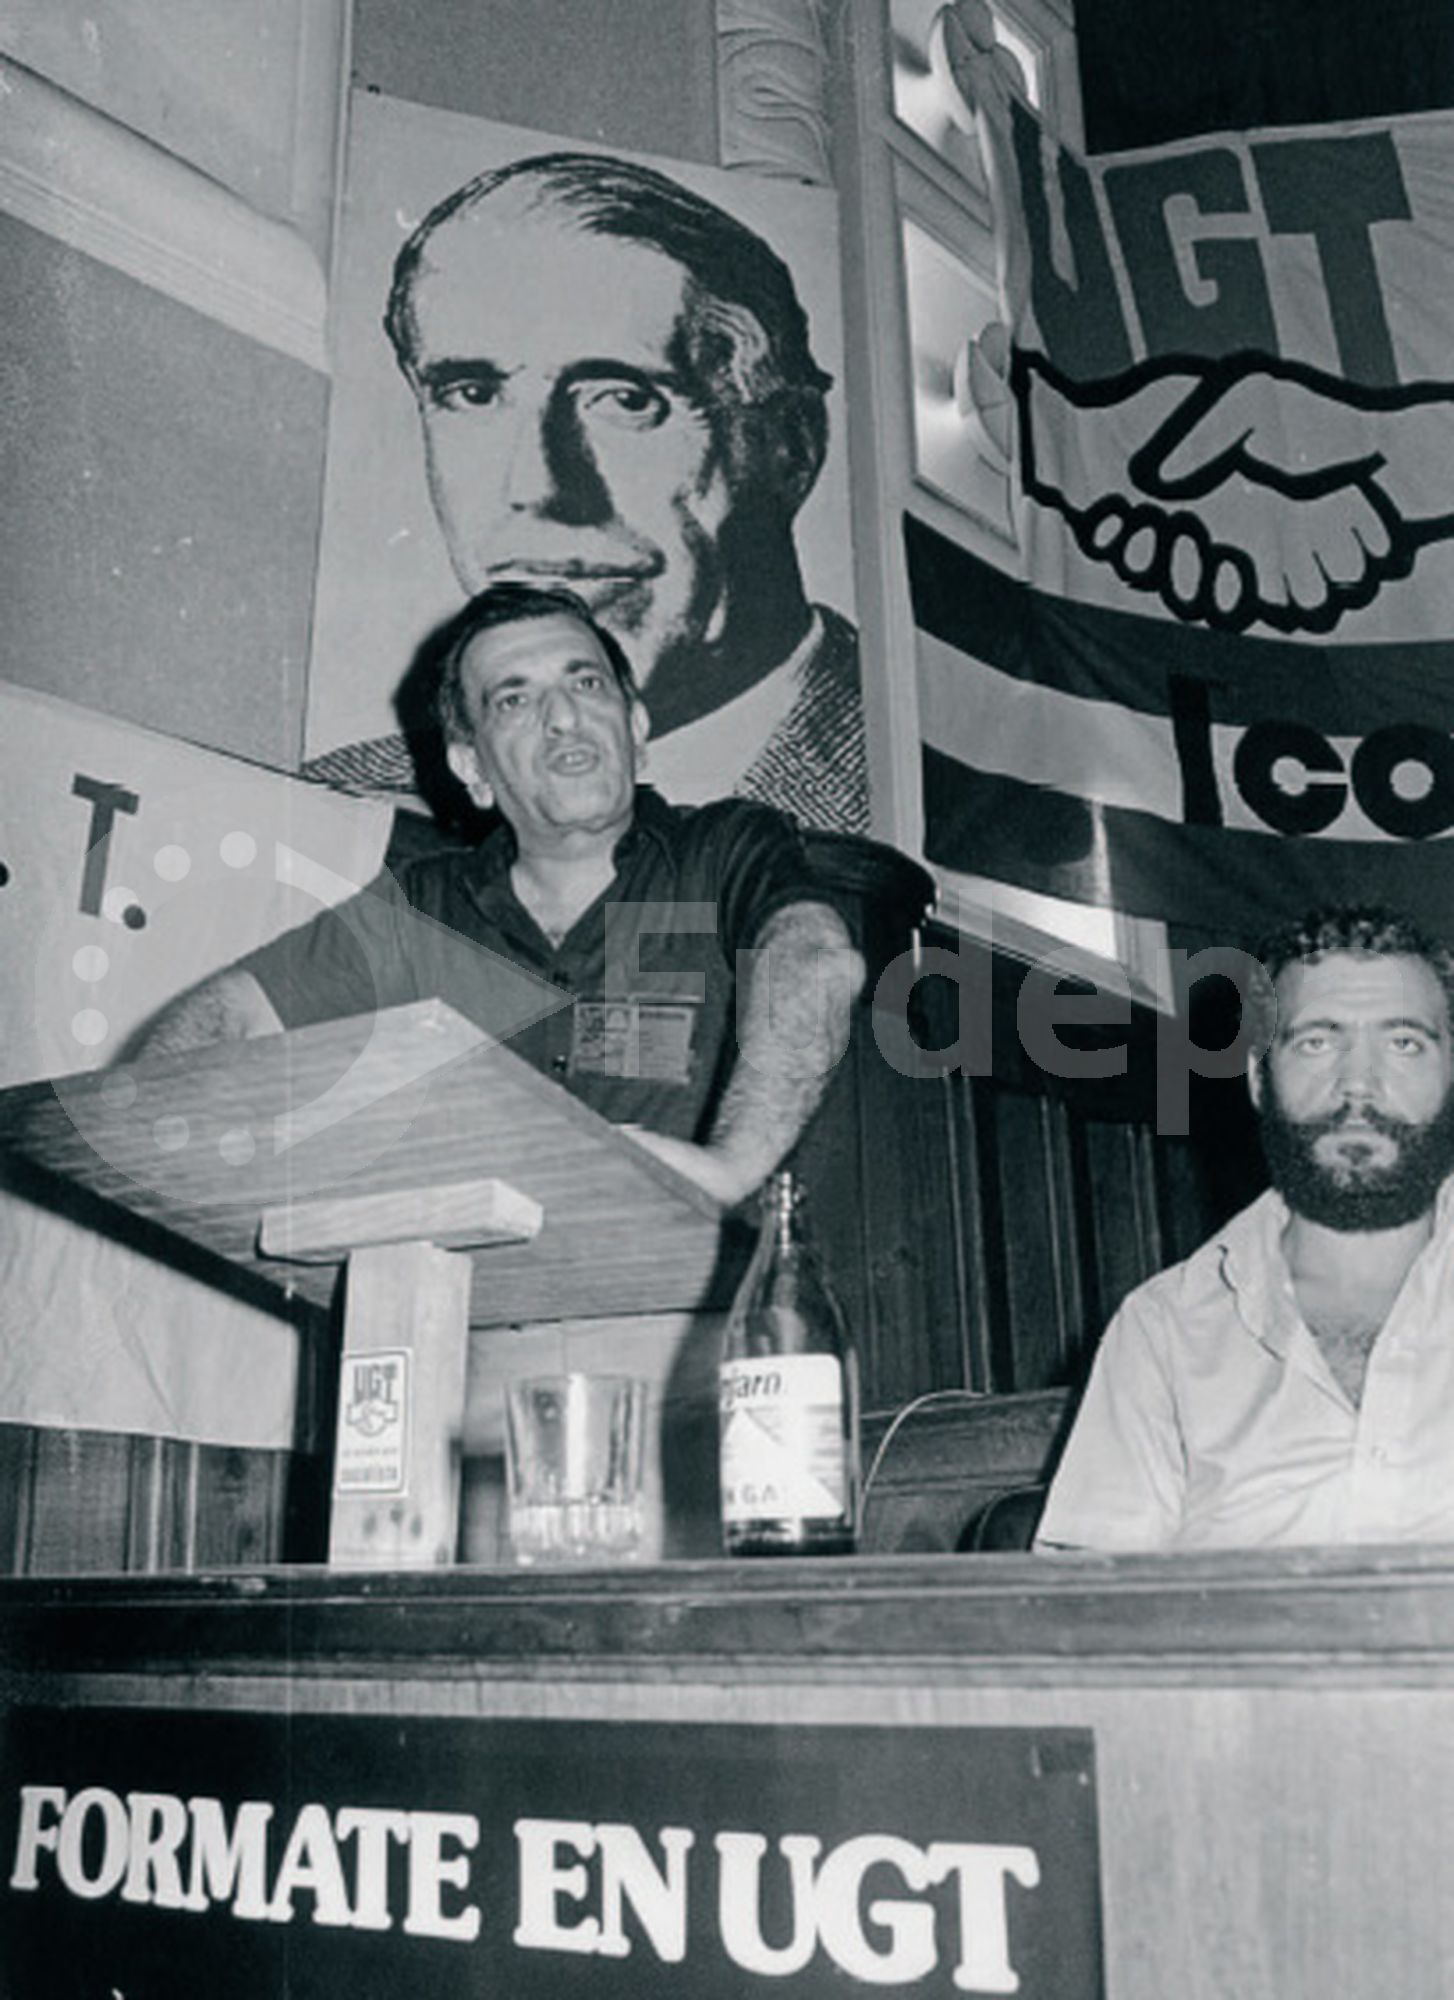 El 27 de mayo de 1978 se constituía en Cádiz la Junta Preautonómica de Andalucía, siendo elegido presidente Plácido Fernández Viagas.
En la imagen Plácido Fernández Viagas interviene en el I Congreso Provincial de UGT Sevilla, celebrado en 1978.
(FUDEPA_AHUGTA)